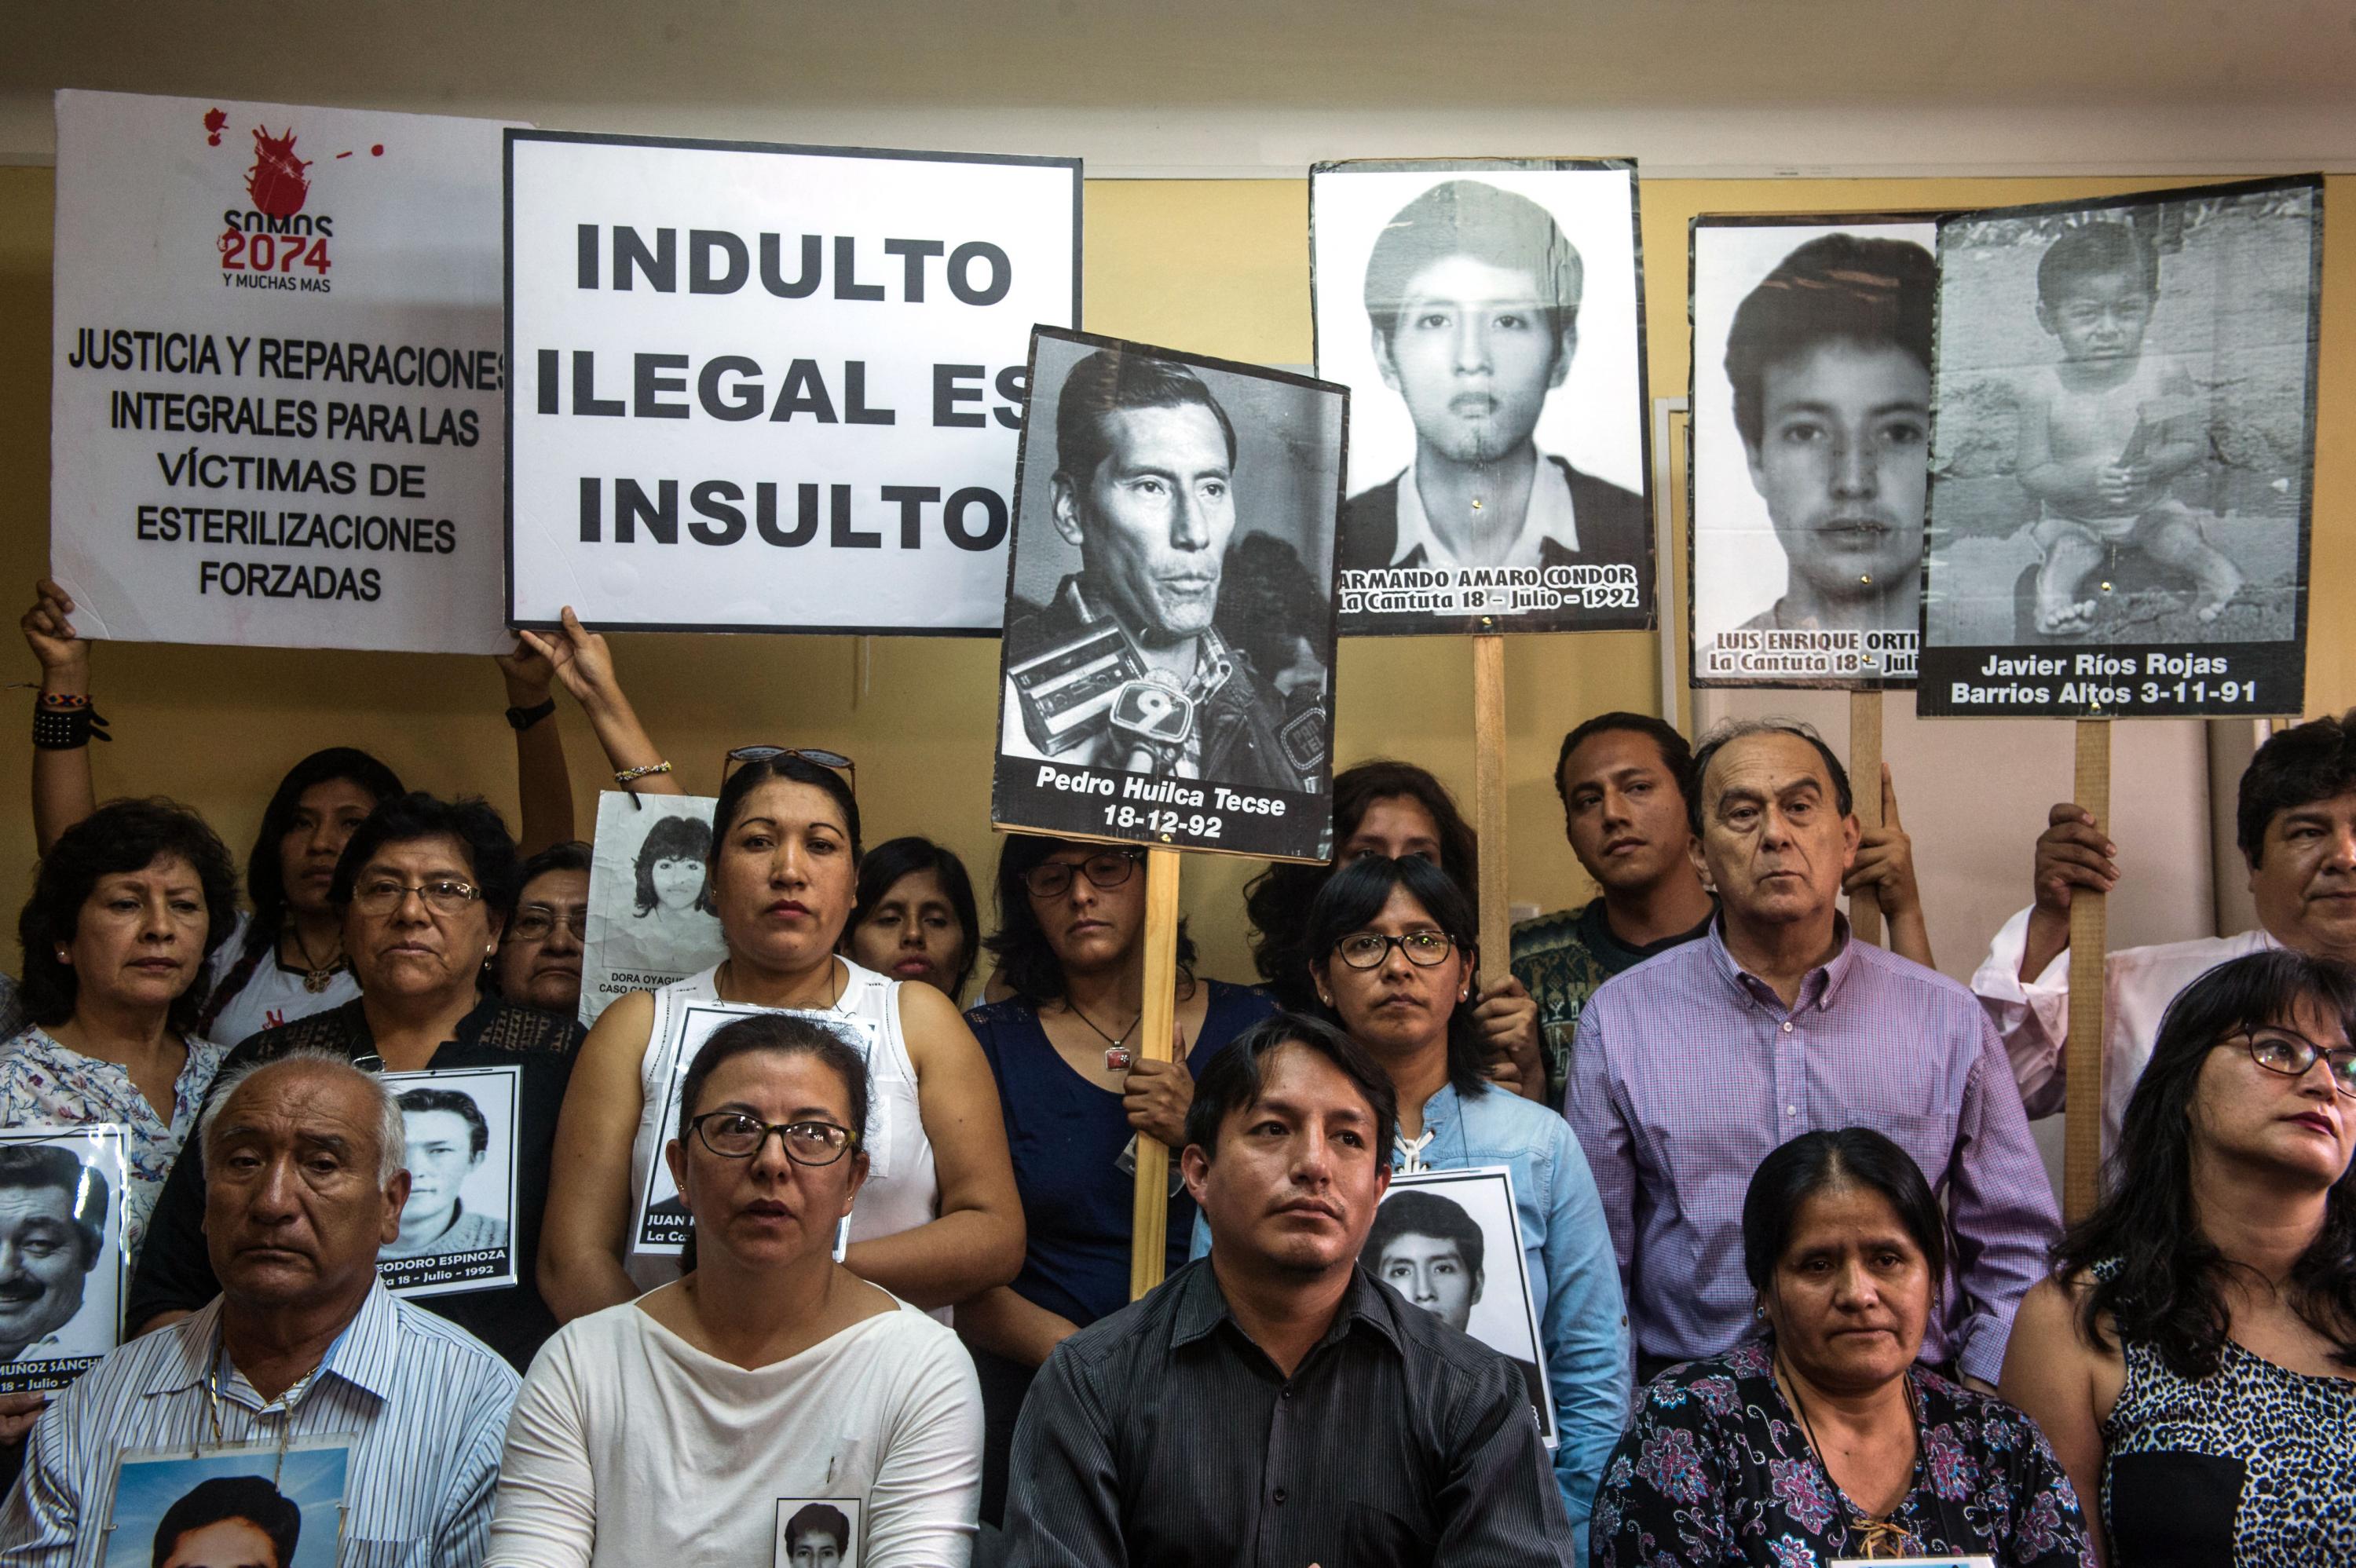 Familiares de las víctimas del régimen de Alberto Fujimori protestaron en contra del indulto, el 27 de diciembre en Lima, Perú. AFP photo / Ernesto Benavides.